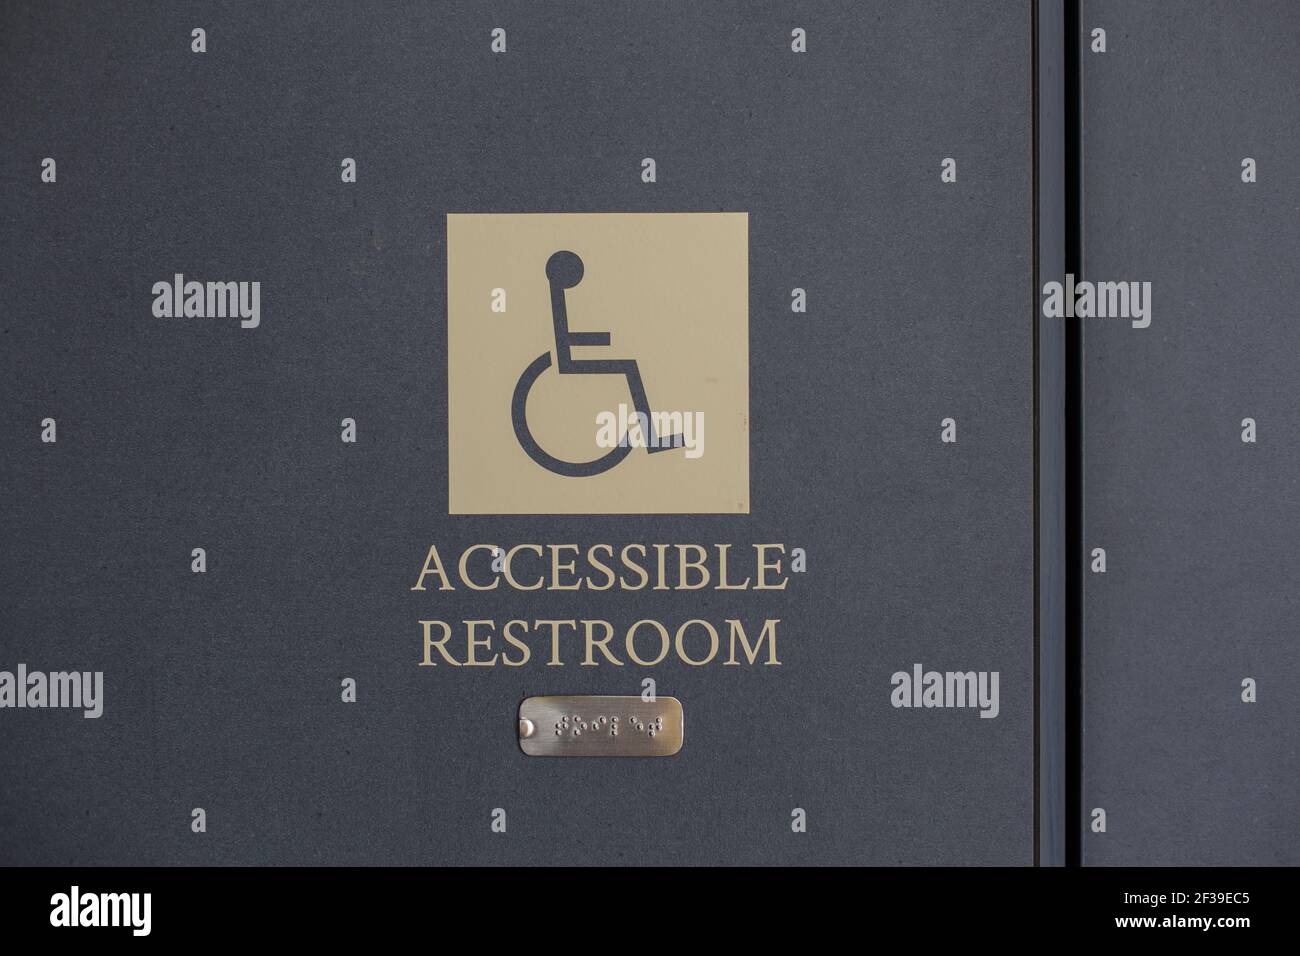 Intelligentes Schilderdesign und Blindenschrift-System, um eine behindertengerechte Toilette anzuzeigen. Stockfoto